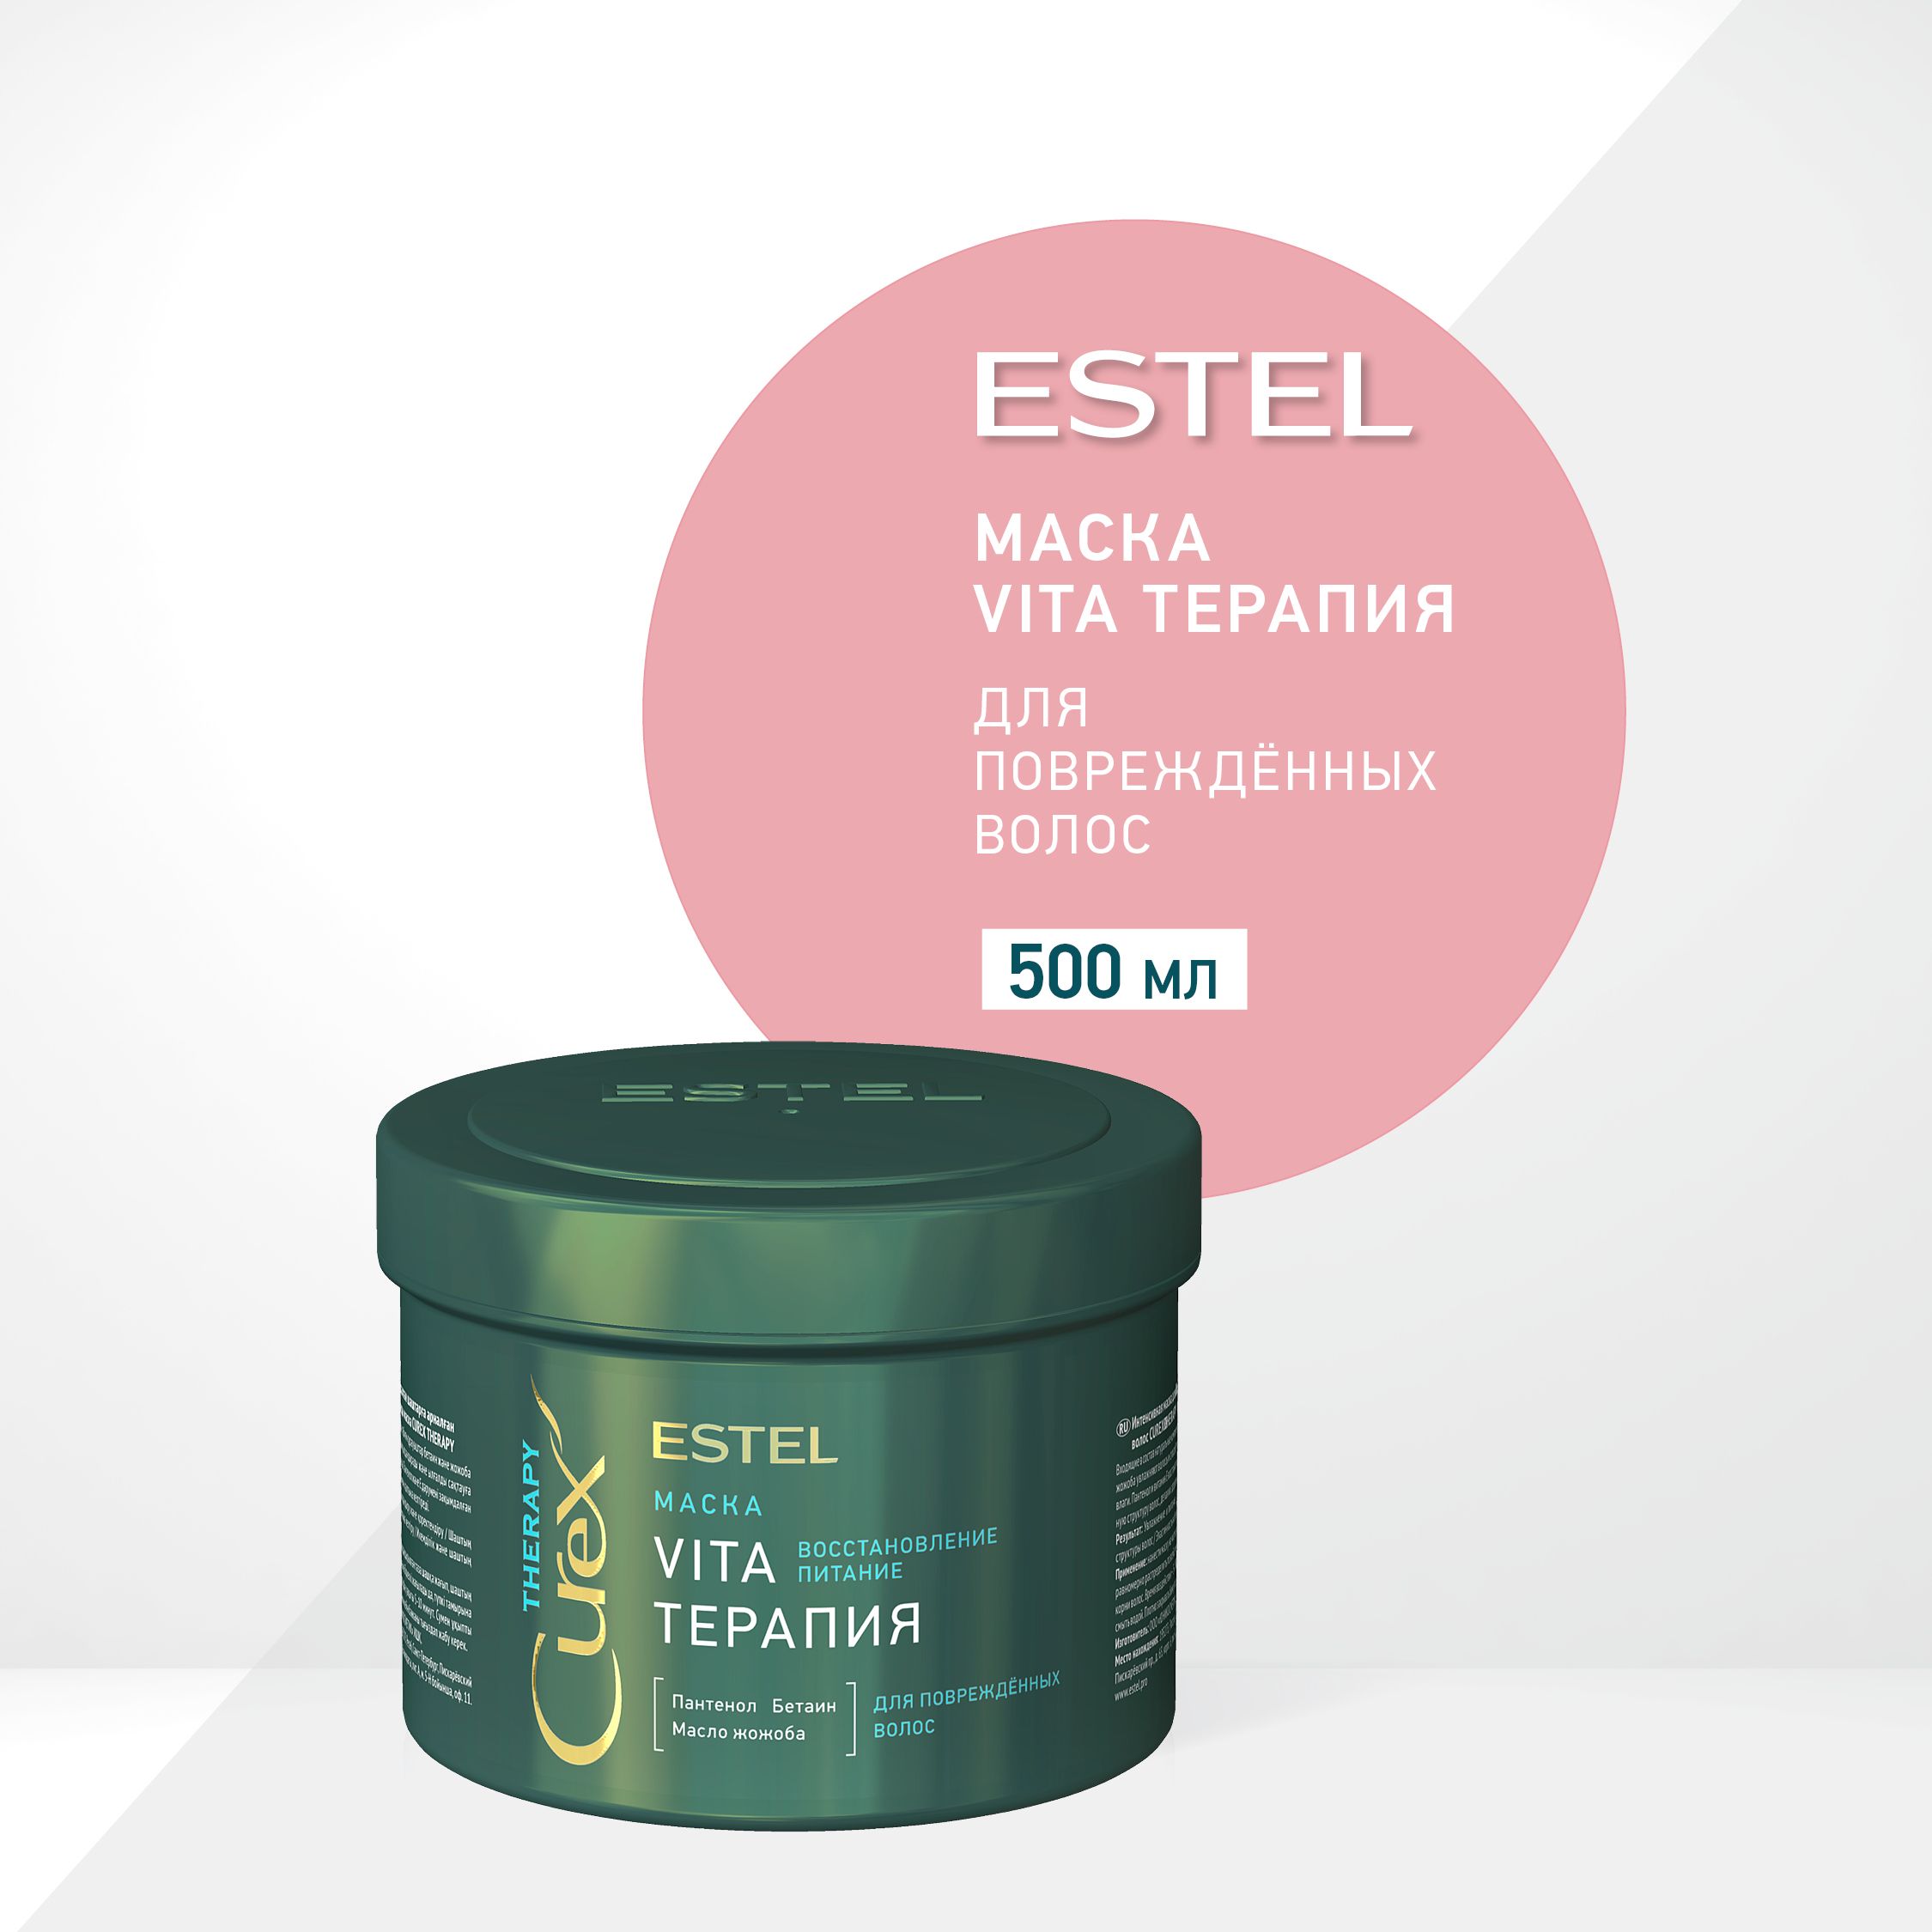 Маску estel vita. Estel Curex маска Vita терапия Therapy 500. Маска Vita - терапия Estel Curex Therapy для повреждённых волос 500. Estel Curex Therapy интенсивная маска для поврежденных волос Vita-терапия.